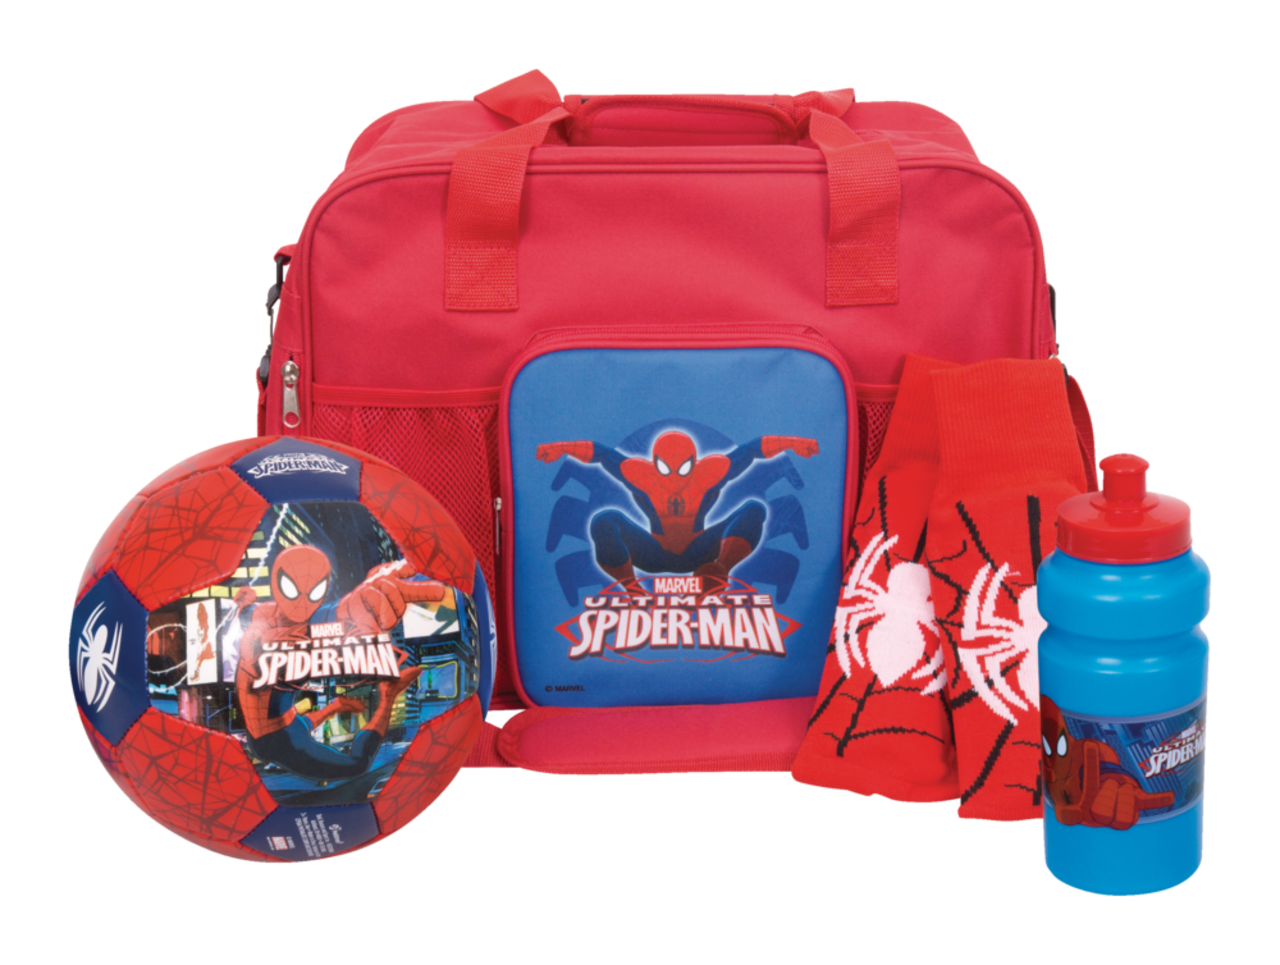 Équipement de soccer Marvel Spiderman pour enfants avec ballon,  bas/jambière, gourde et sac, paq. 4